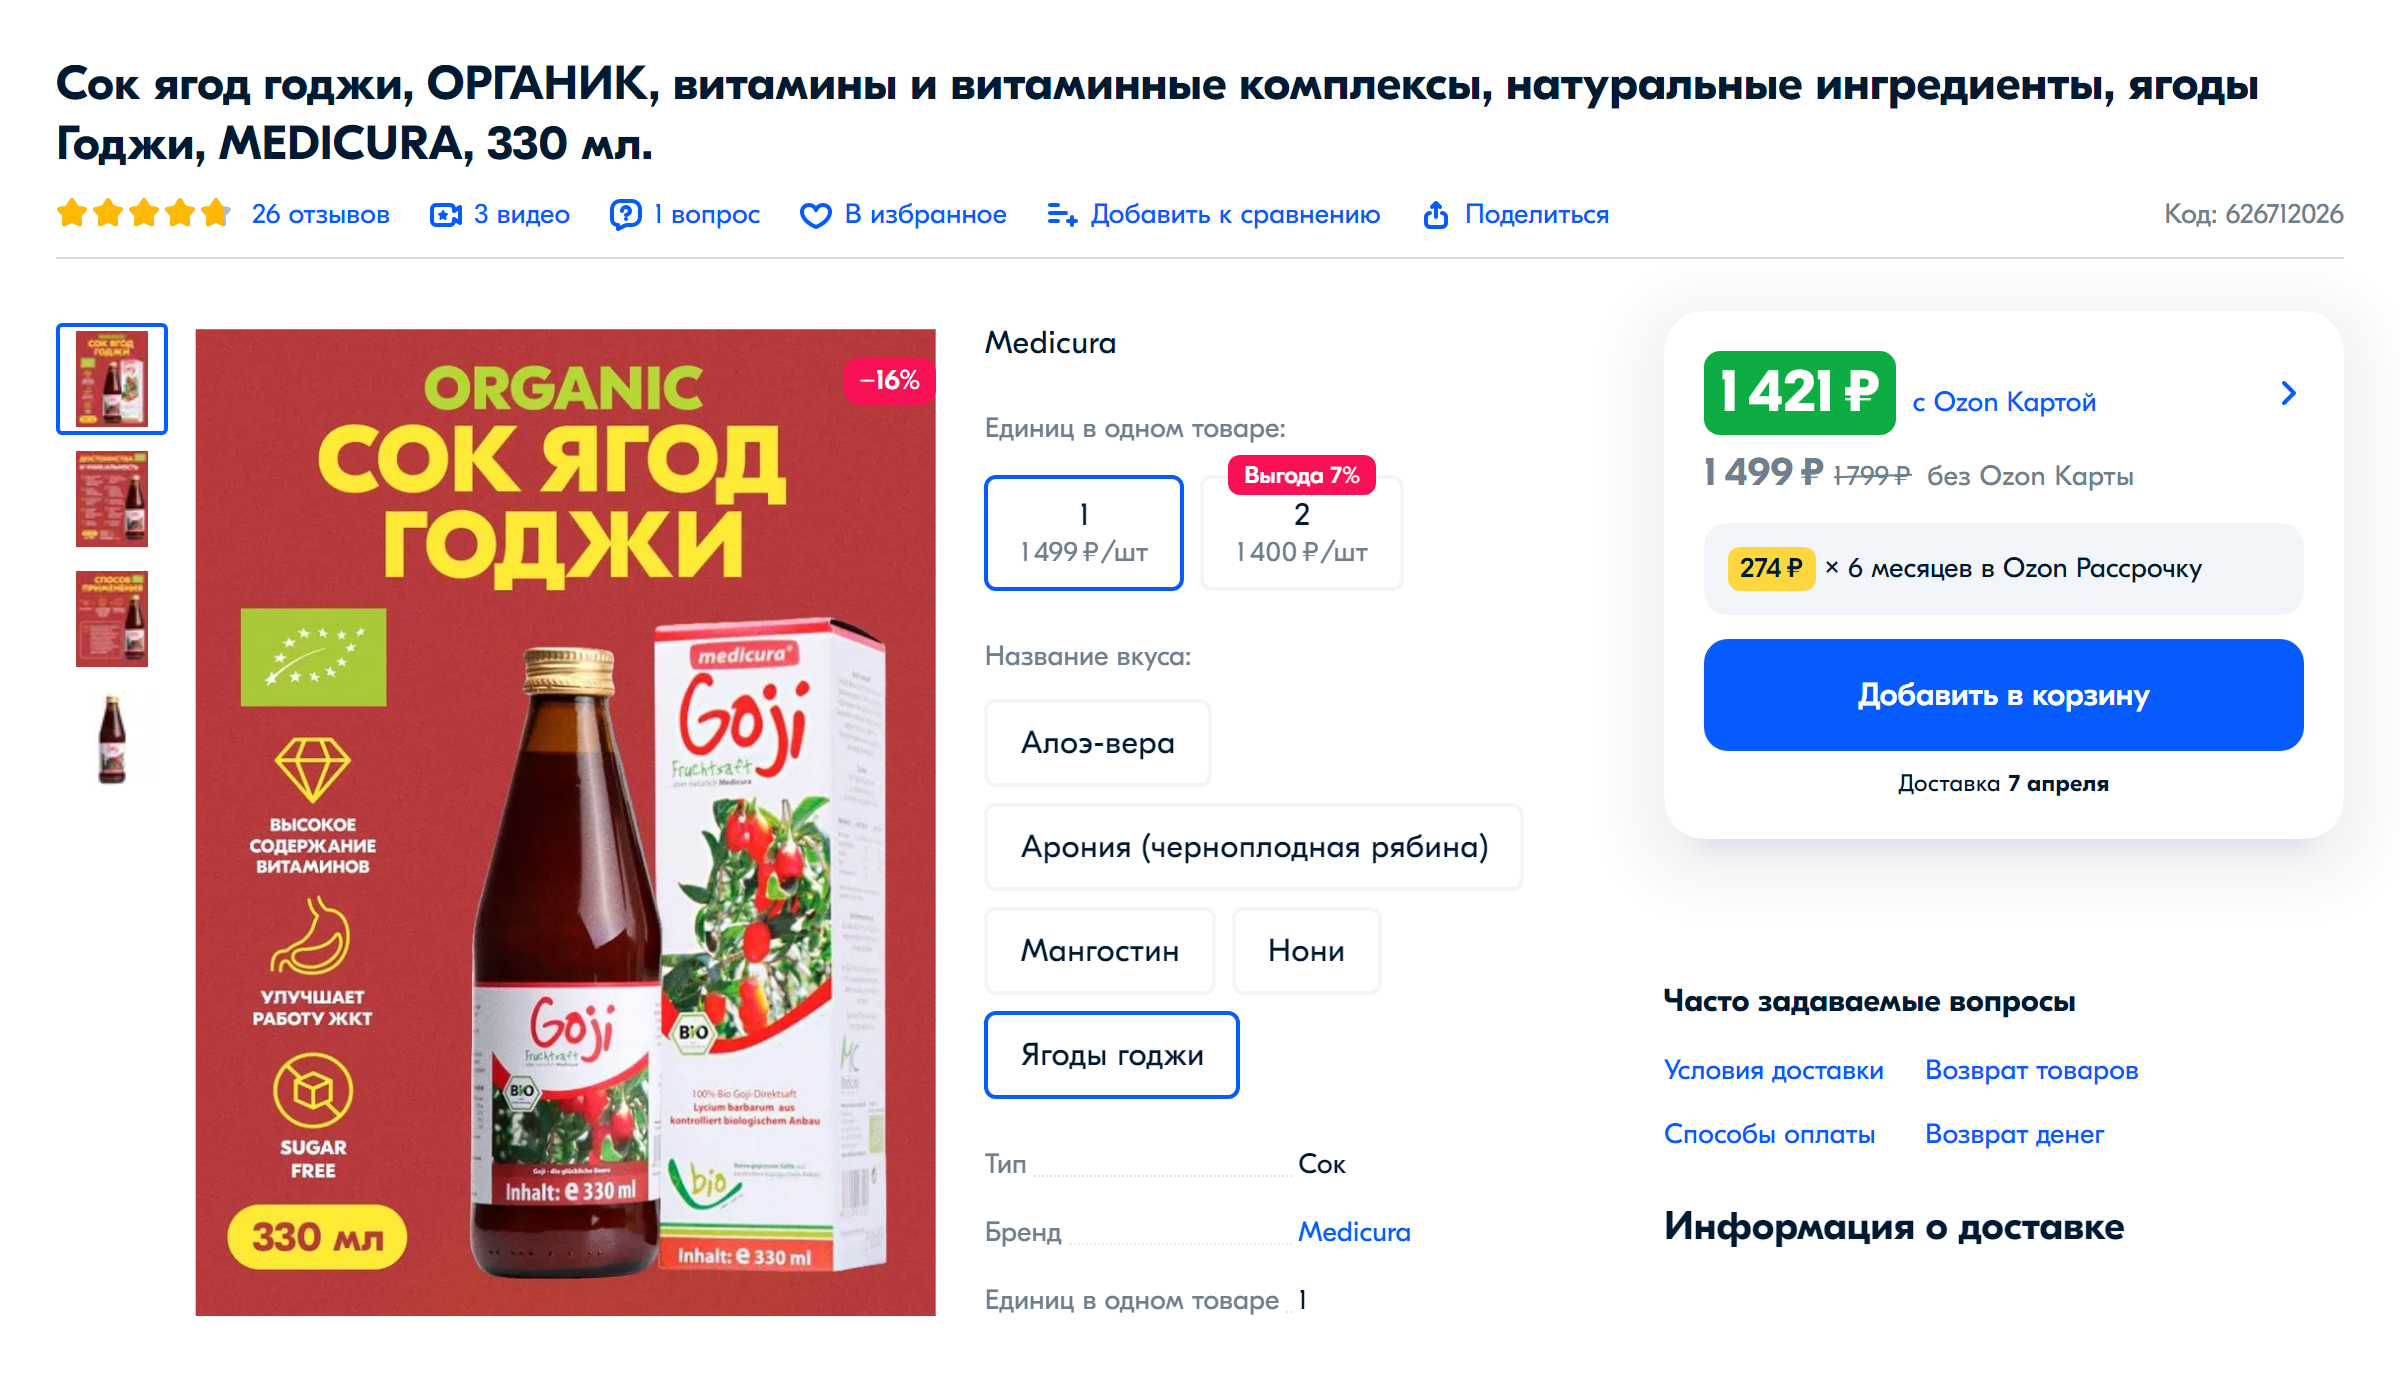 Сок из ягод годжи. Источник: ozon.ru